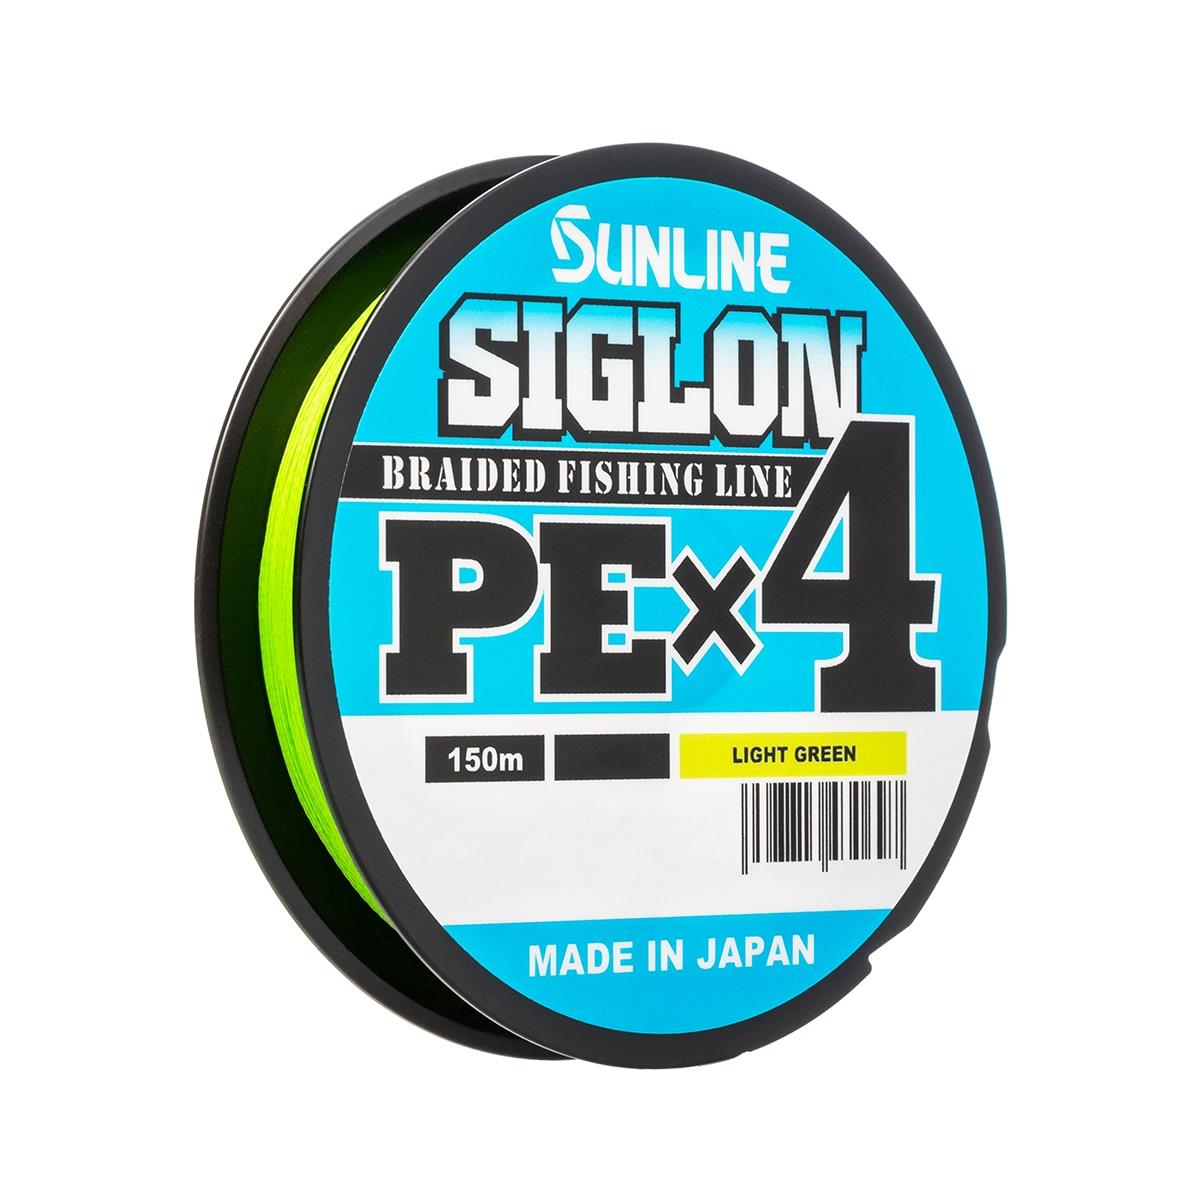 Шнур SIGLON PE×4 150 м (Light green) Sunline двадцатичетырехпрядный шнур стройбат